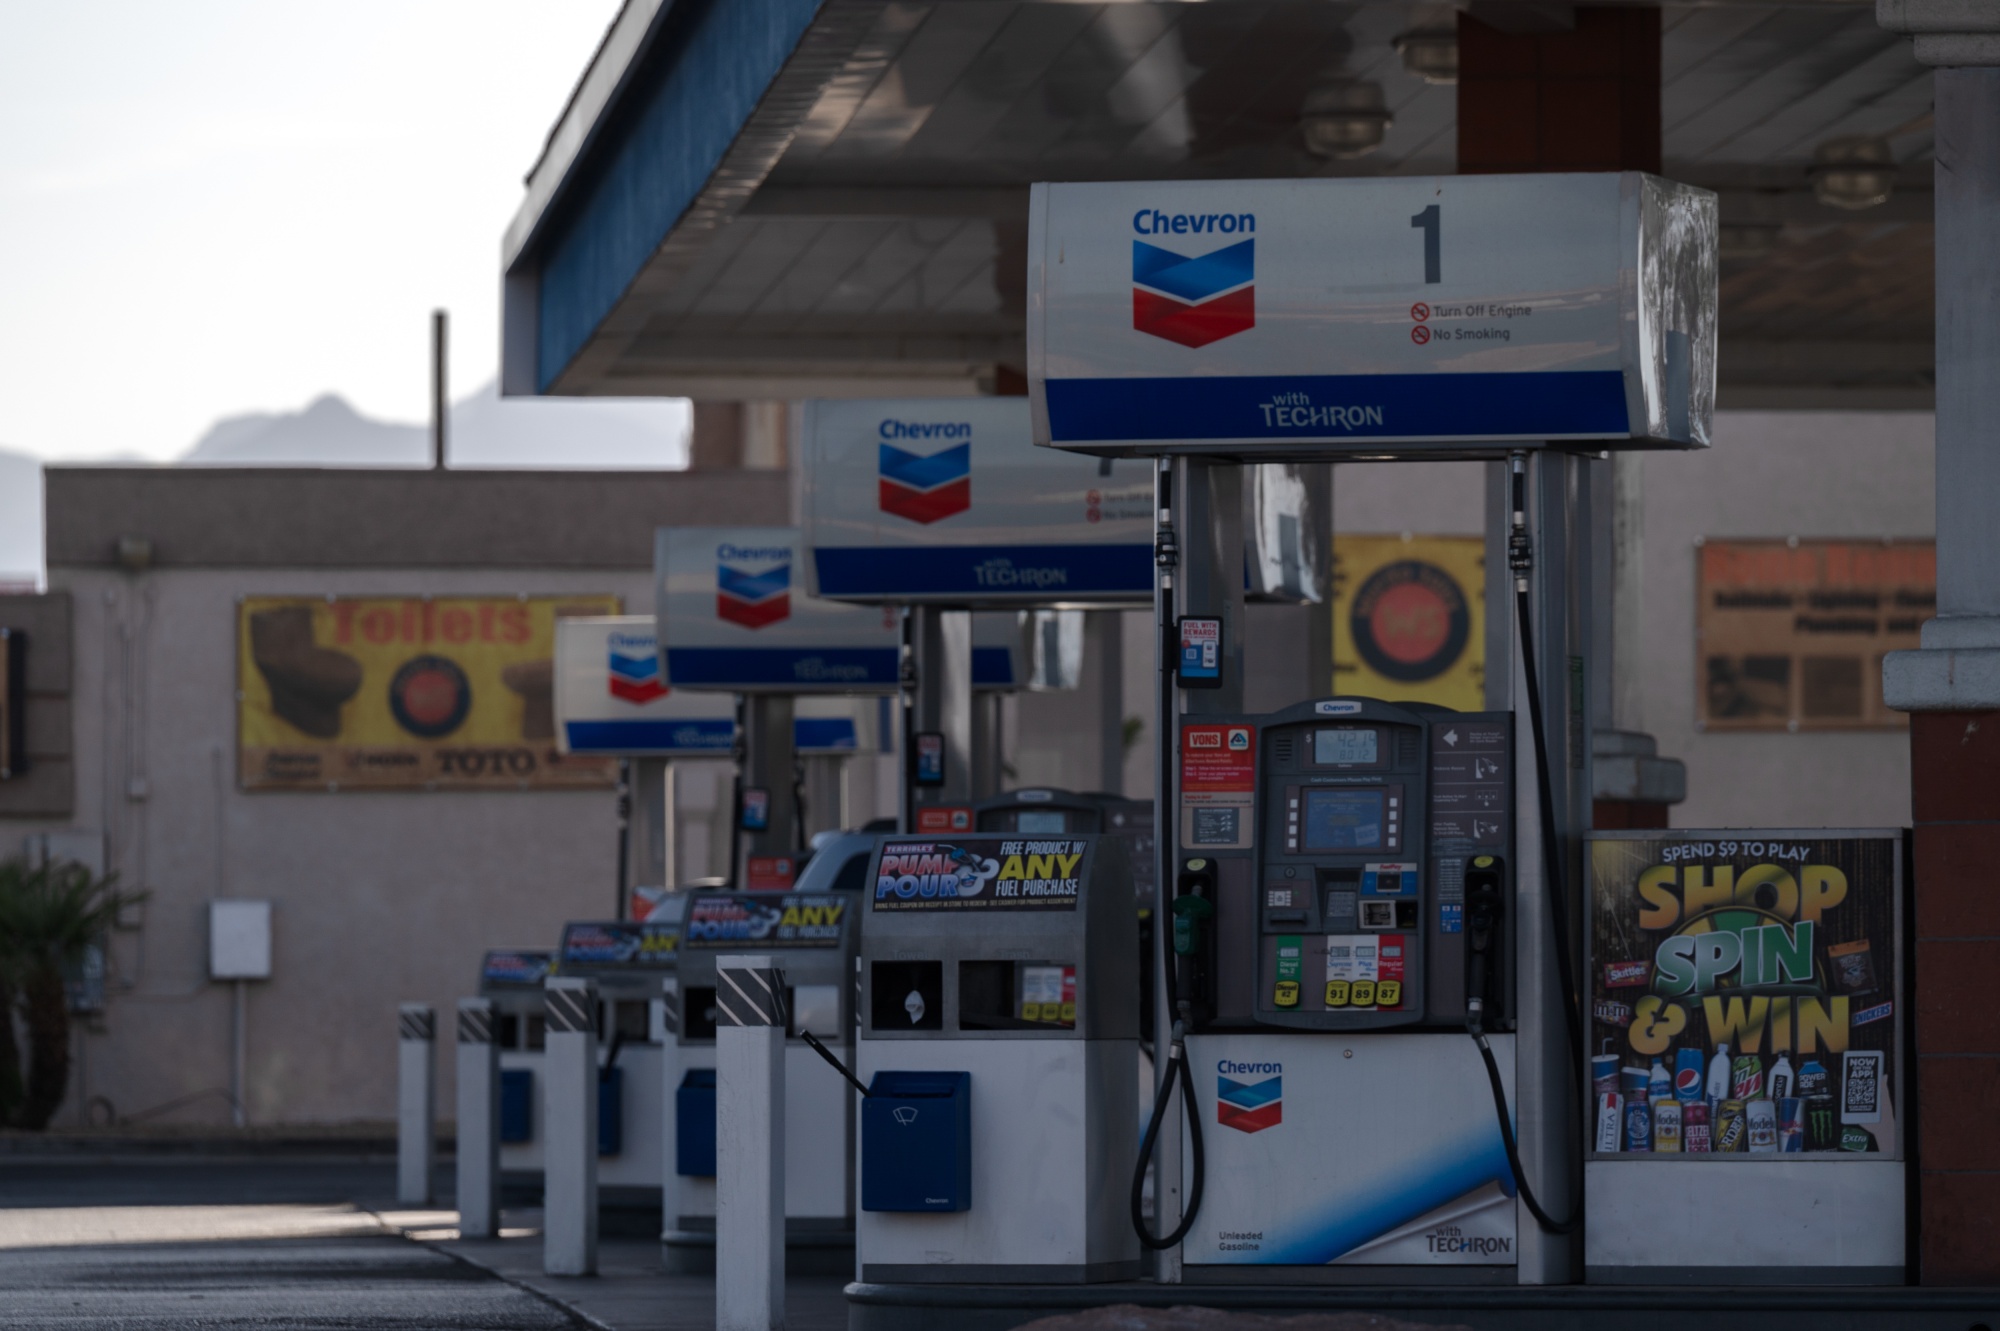 The true cost of gasoline? $13 a gallon